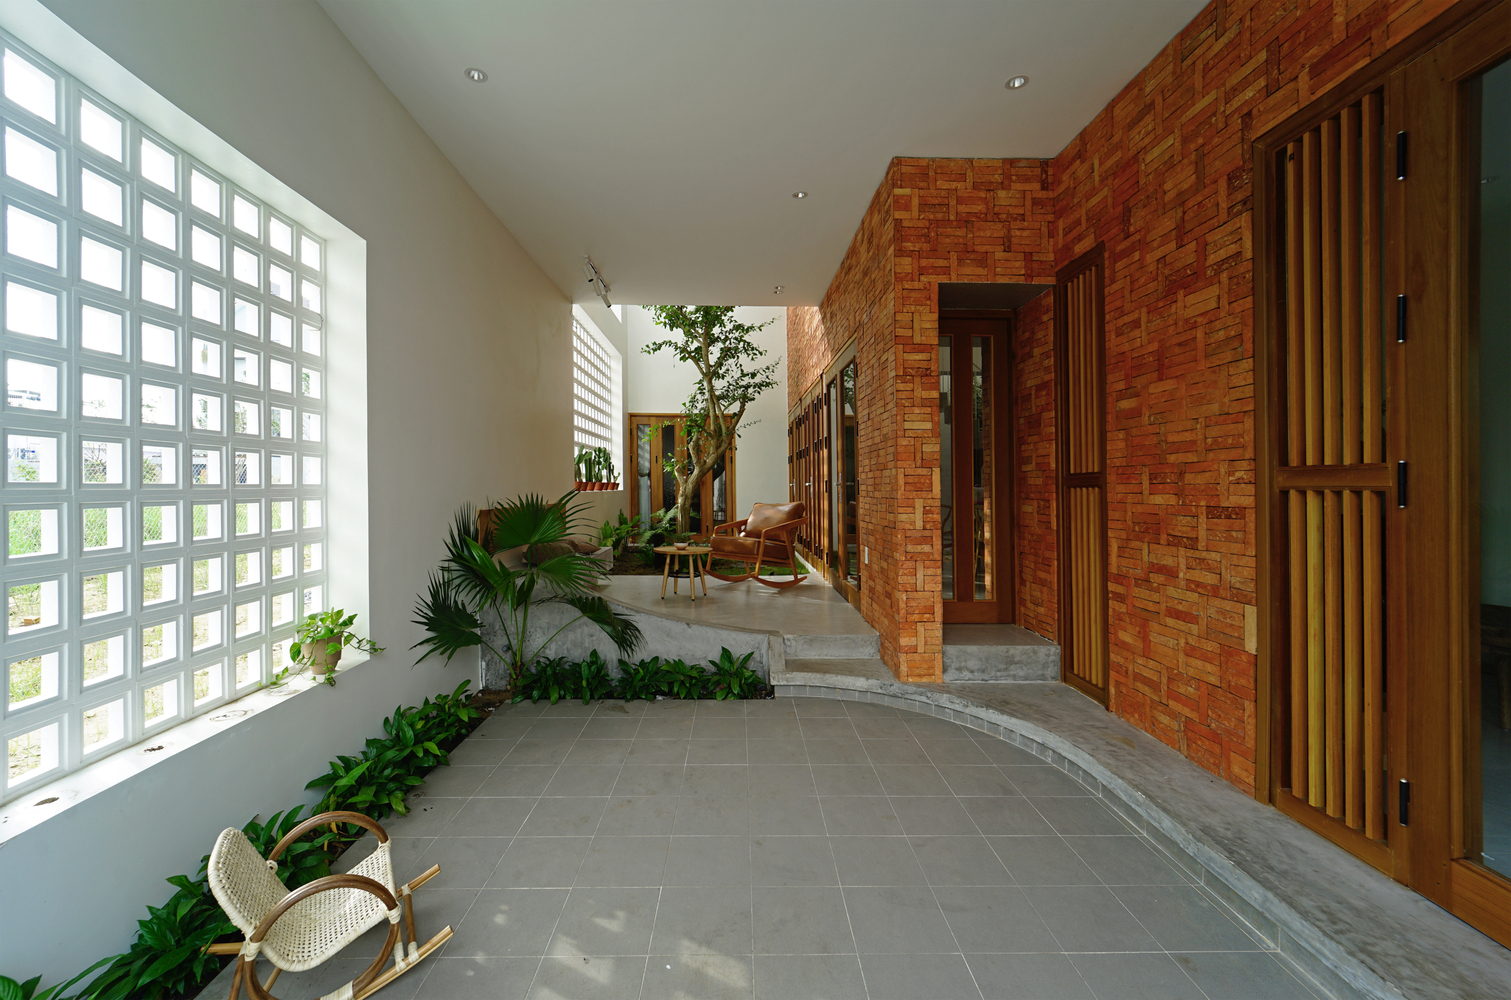 A-House, ngôi nhà phố Quảng Ngãi dùng chính gạch mộc để tạo điểm nhấn cá nhân ấn tượng - Ảnh 9